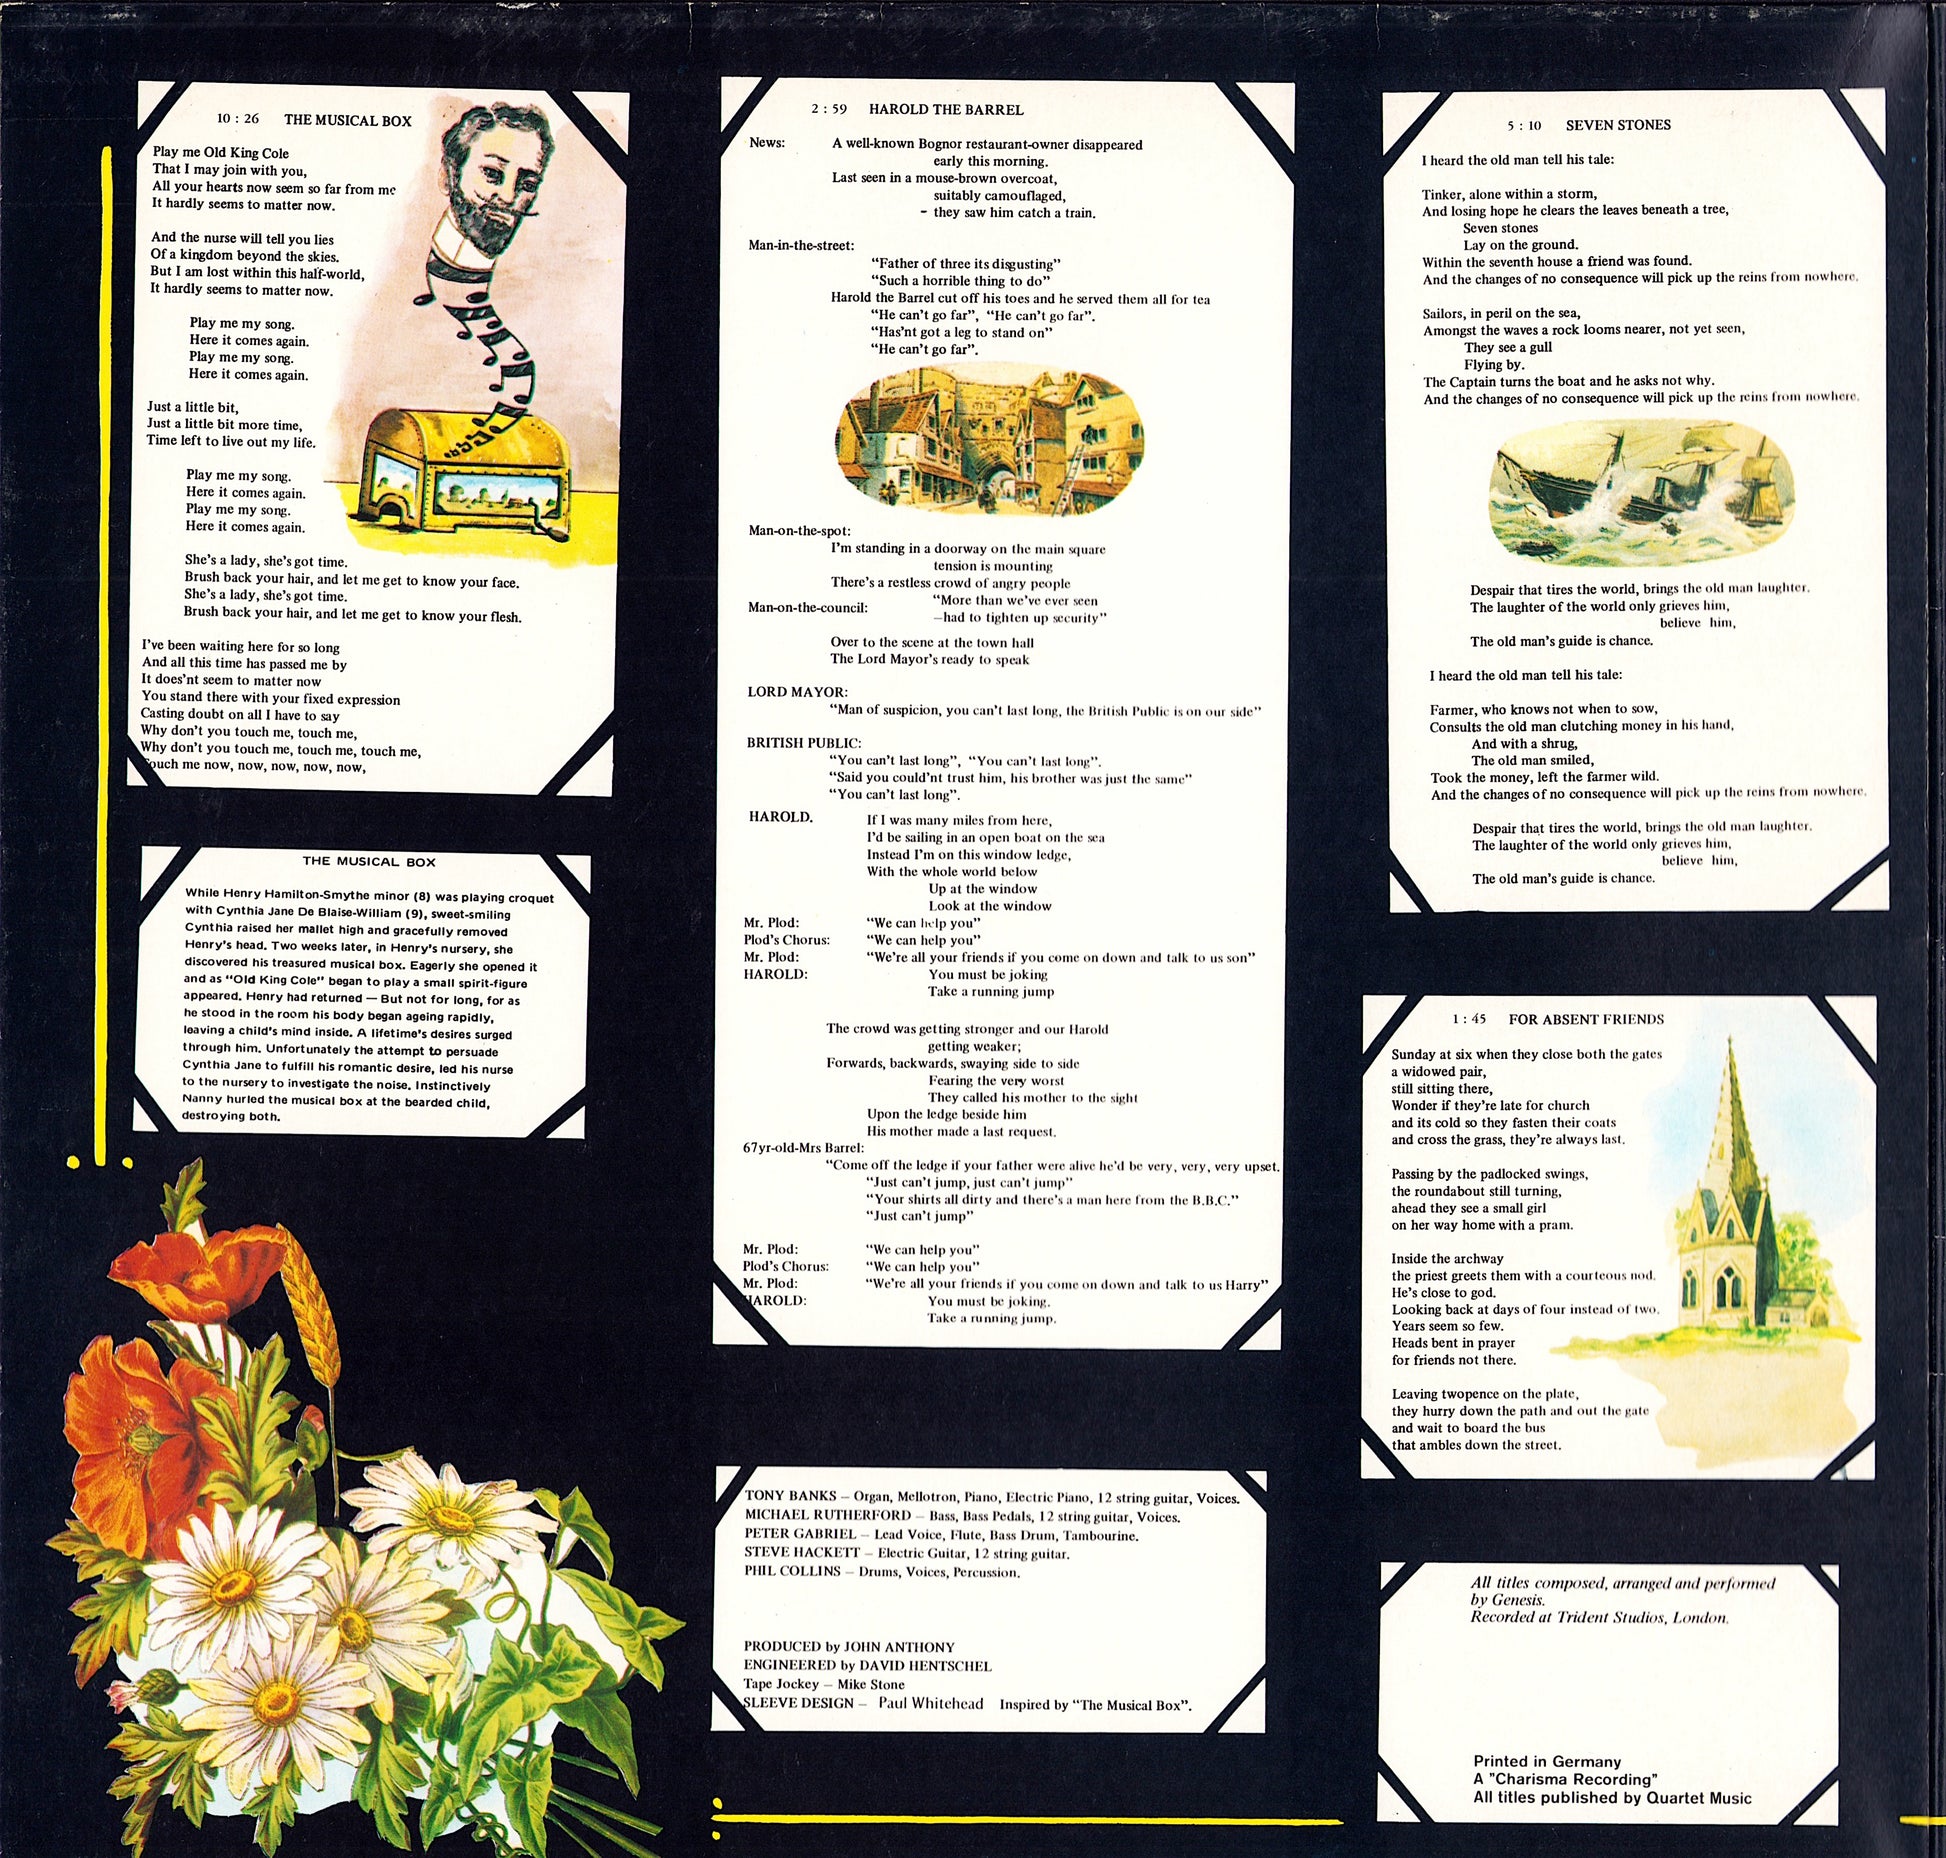 Genesis – Nursery Cryme Vinyl LP